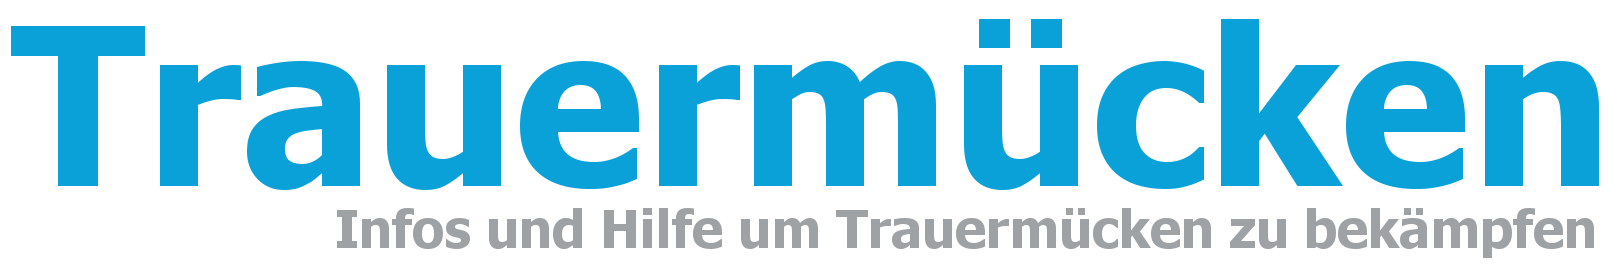 trauermuecken-website-logo-neu